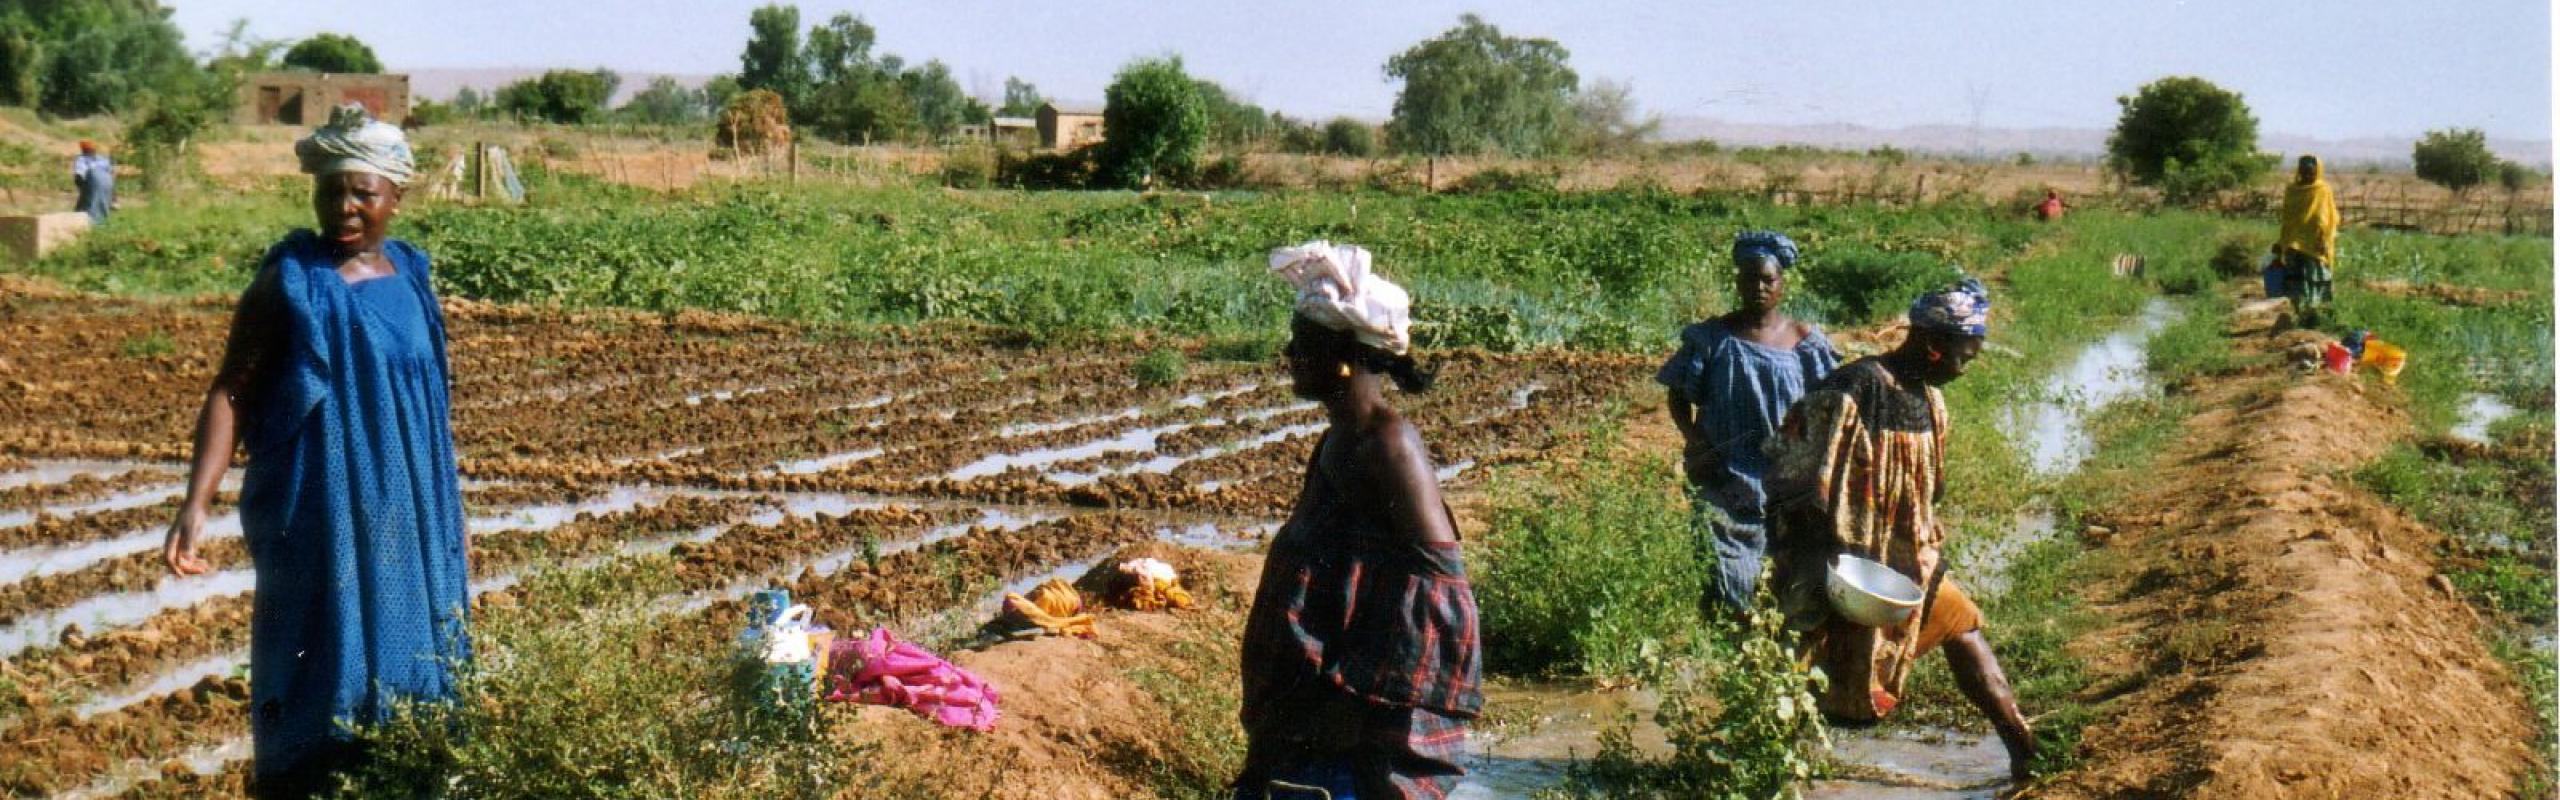 Des agricultrices se tiennent dans un champ irrigué au Sénégal.